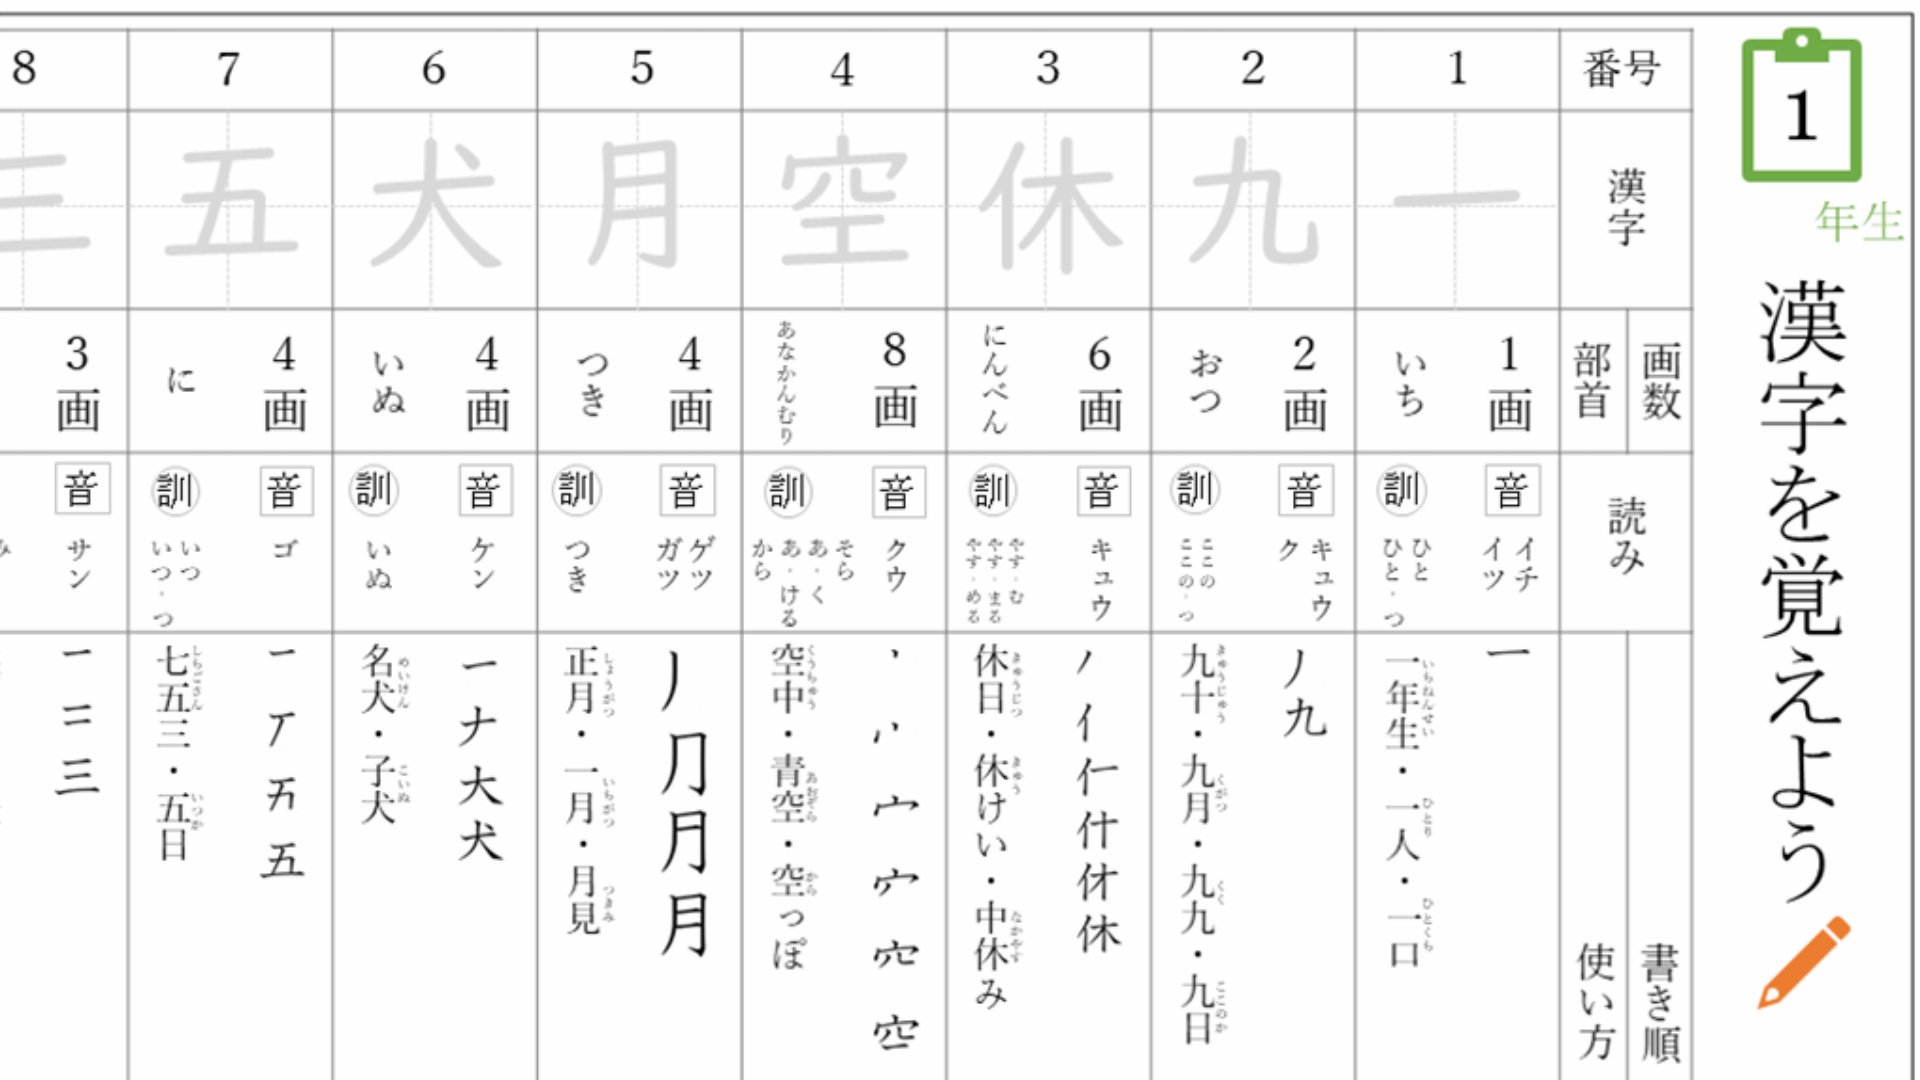 Microsoft 365 小学生向け漢字ドリルを公開 楽しもう Office で 何度でも繰り返し使える 漢字ドリル の提供を開始しました お子様向けの無料のテンプレートをたくさん用意していますので ぜひ使ってみてください T Co Cxkhwsqz2i